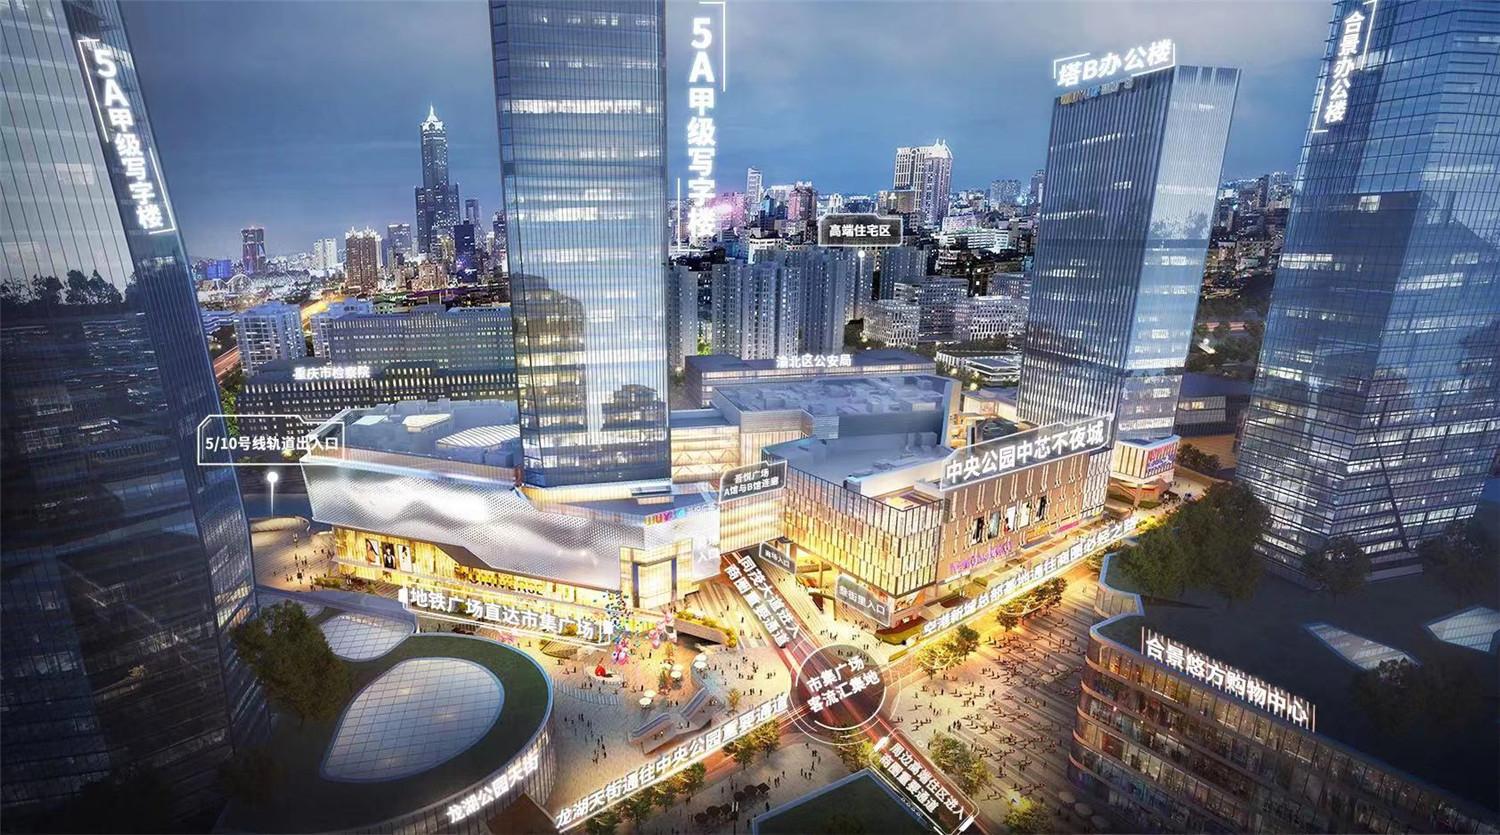 重庆中央公园即将崛起!2021年底3个商场开业,谁能一举夺魁?